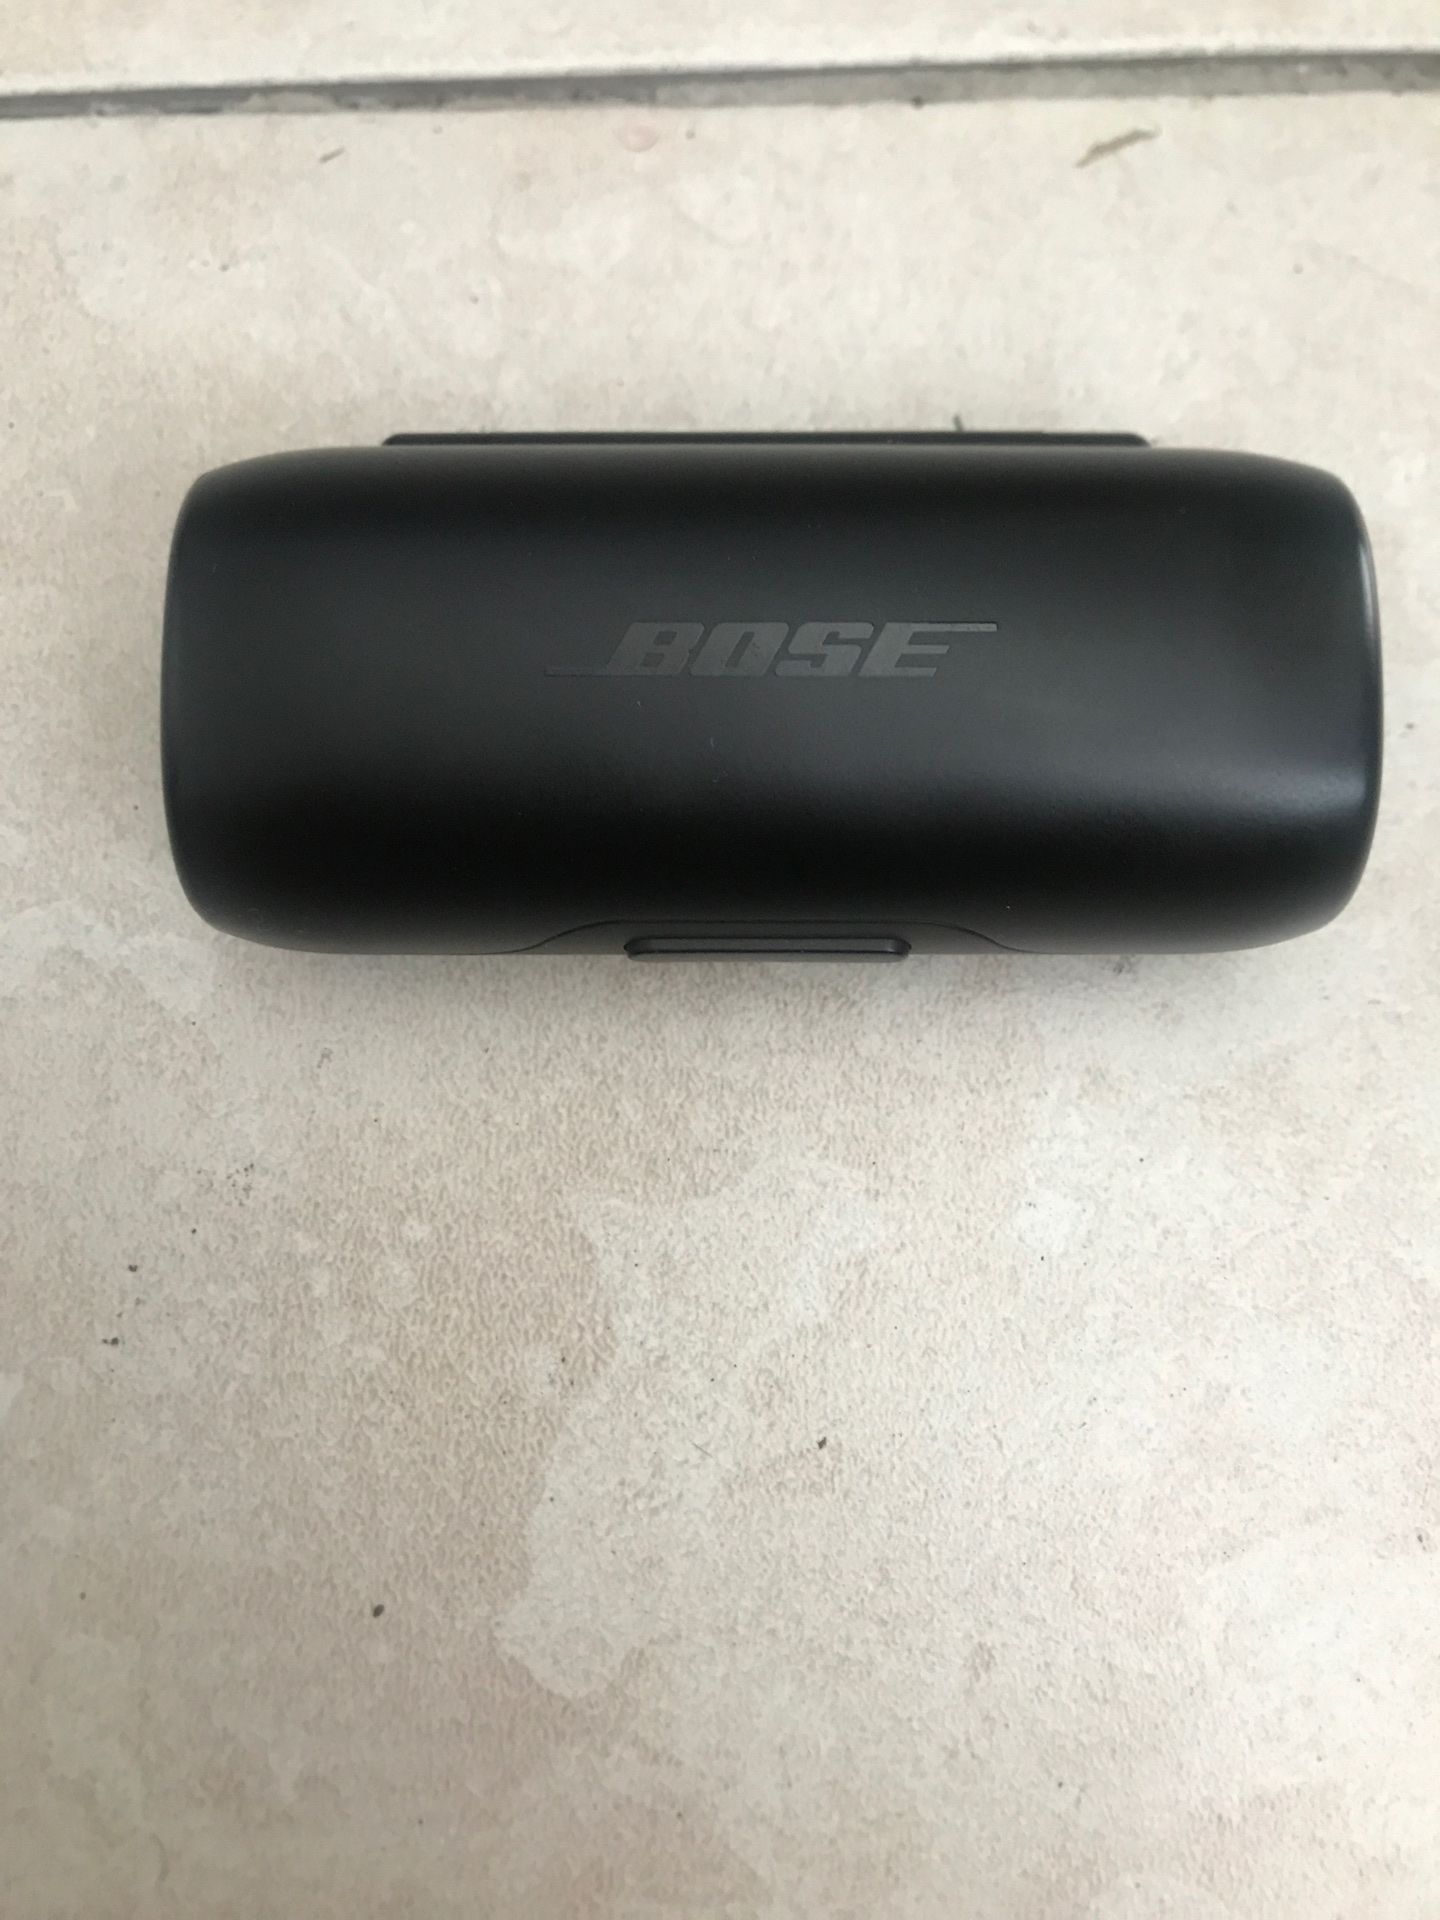 Bose SoundSport free wireless